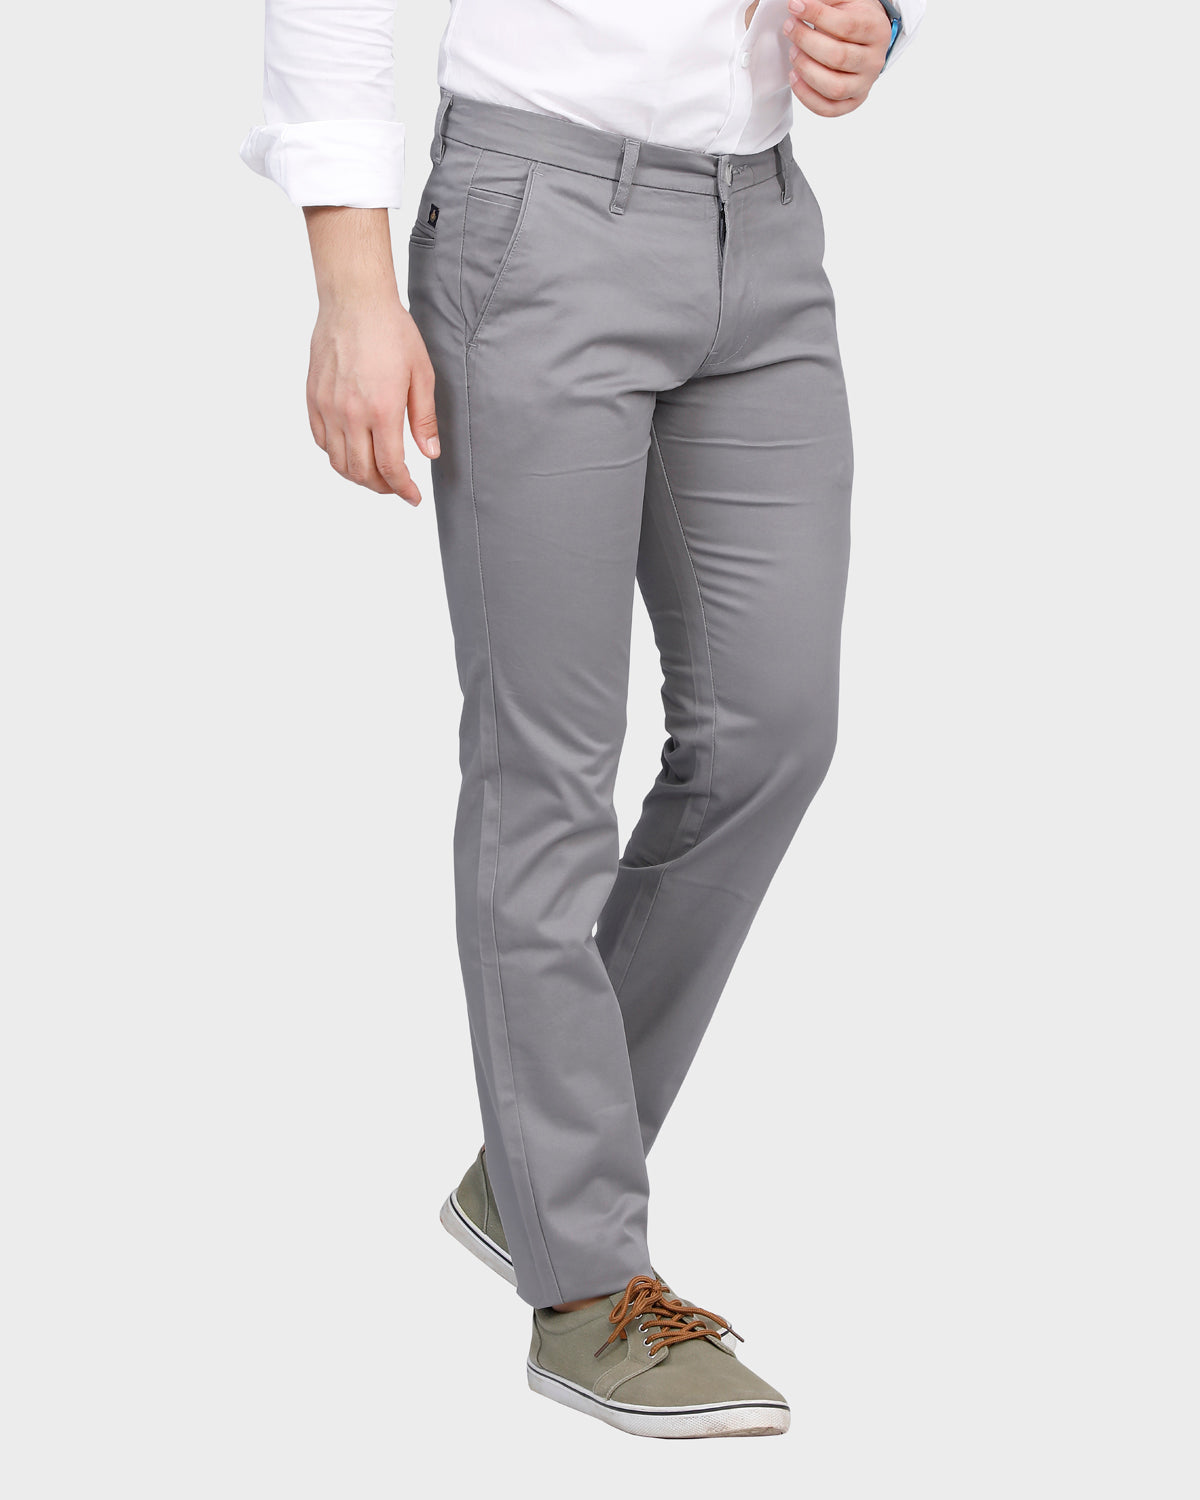 Men's  Slim Fit Pant- Lt. Grey1